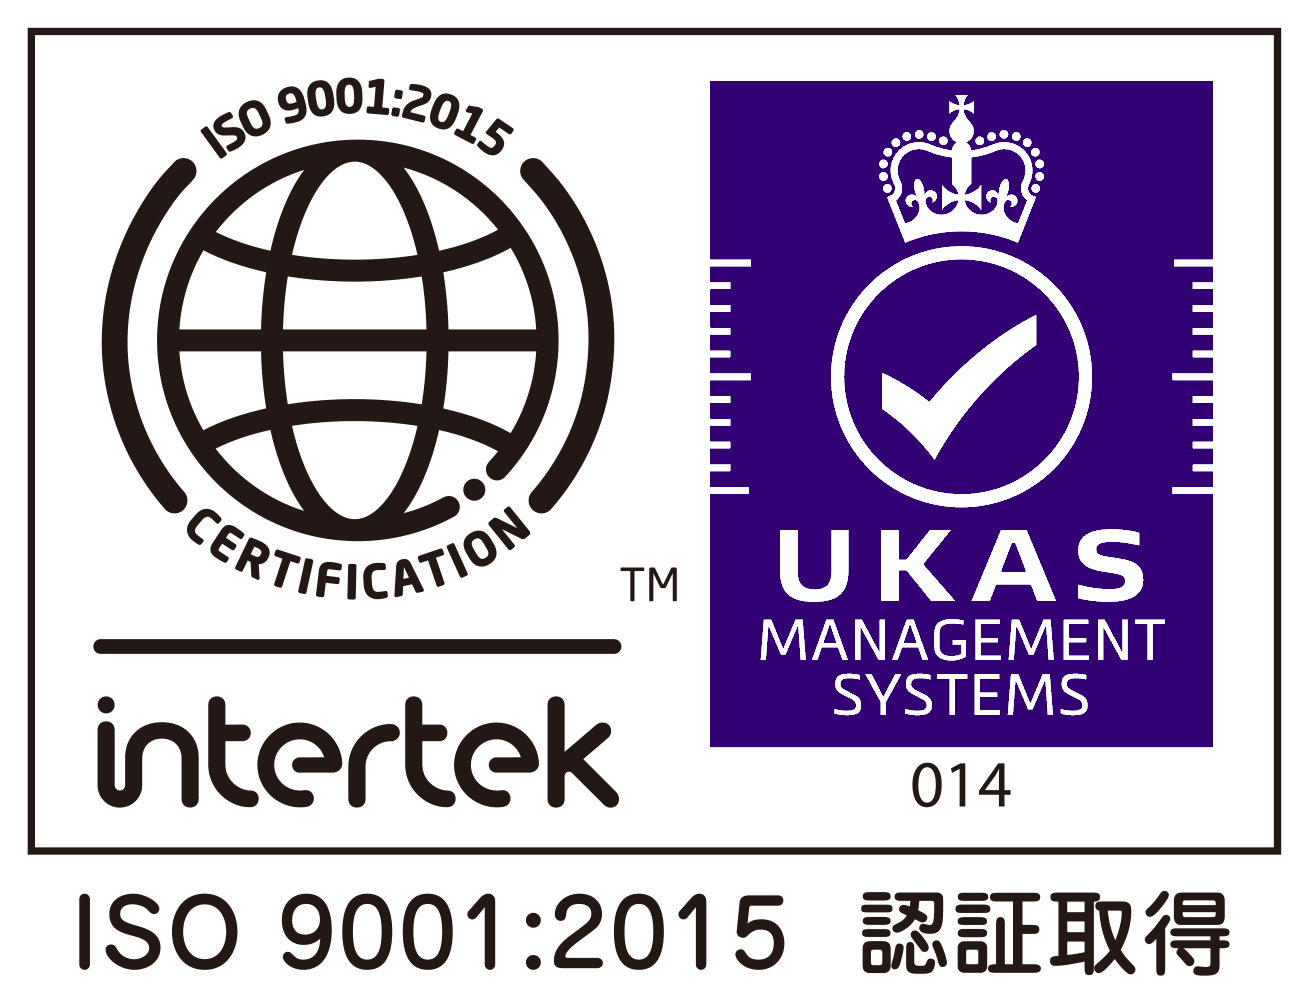 ほりいクリニックは、ISO9001:2015認証を取得しています。